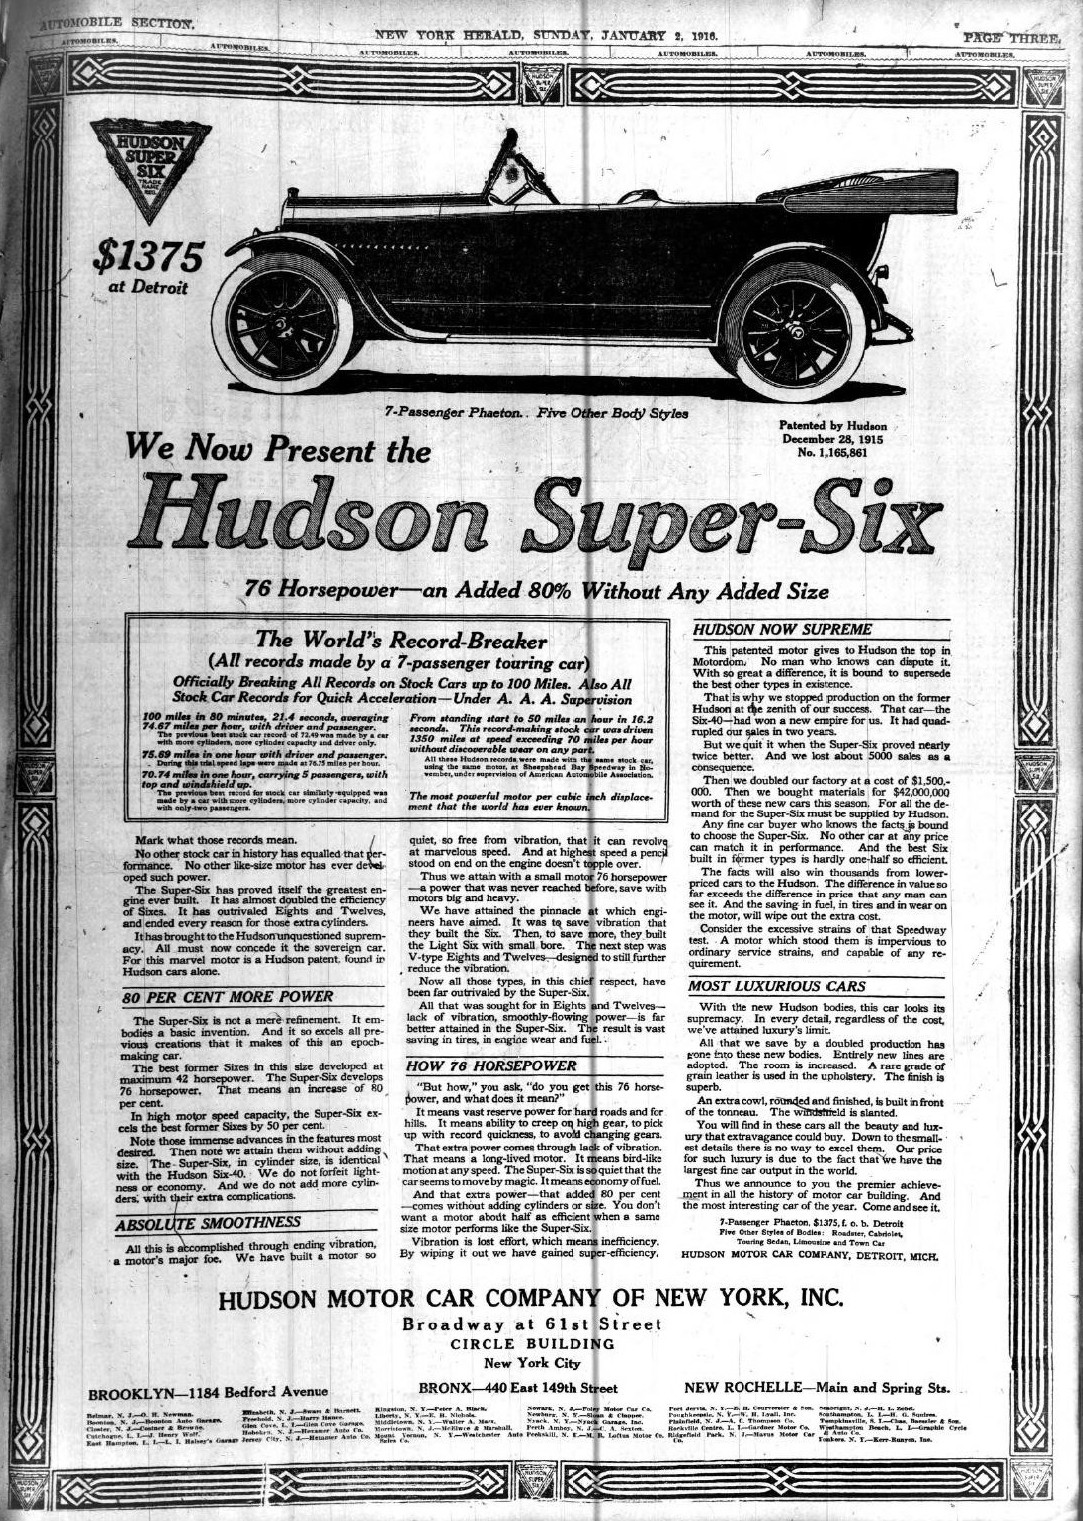 Hudson Motor Car Co. NY 1916 Ad